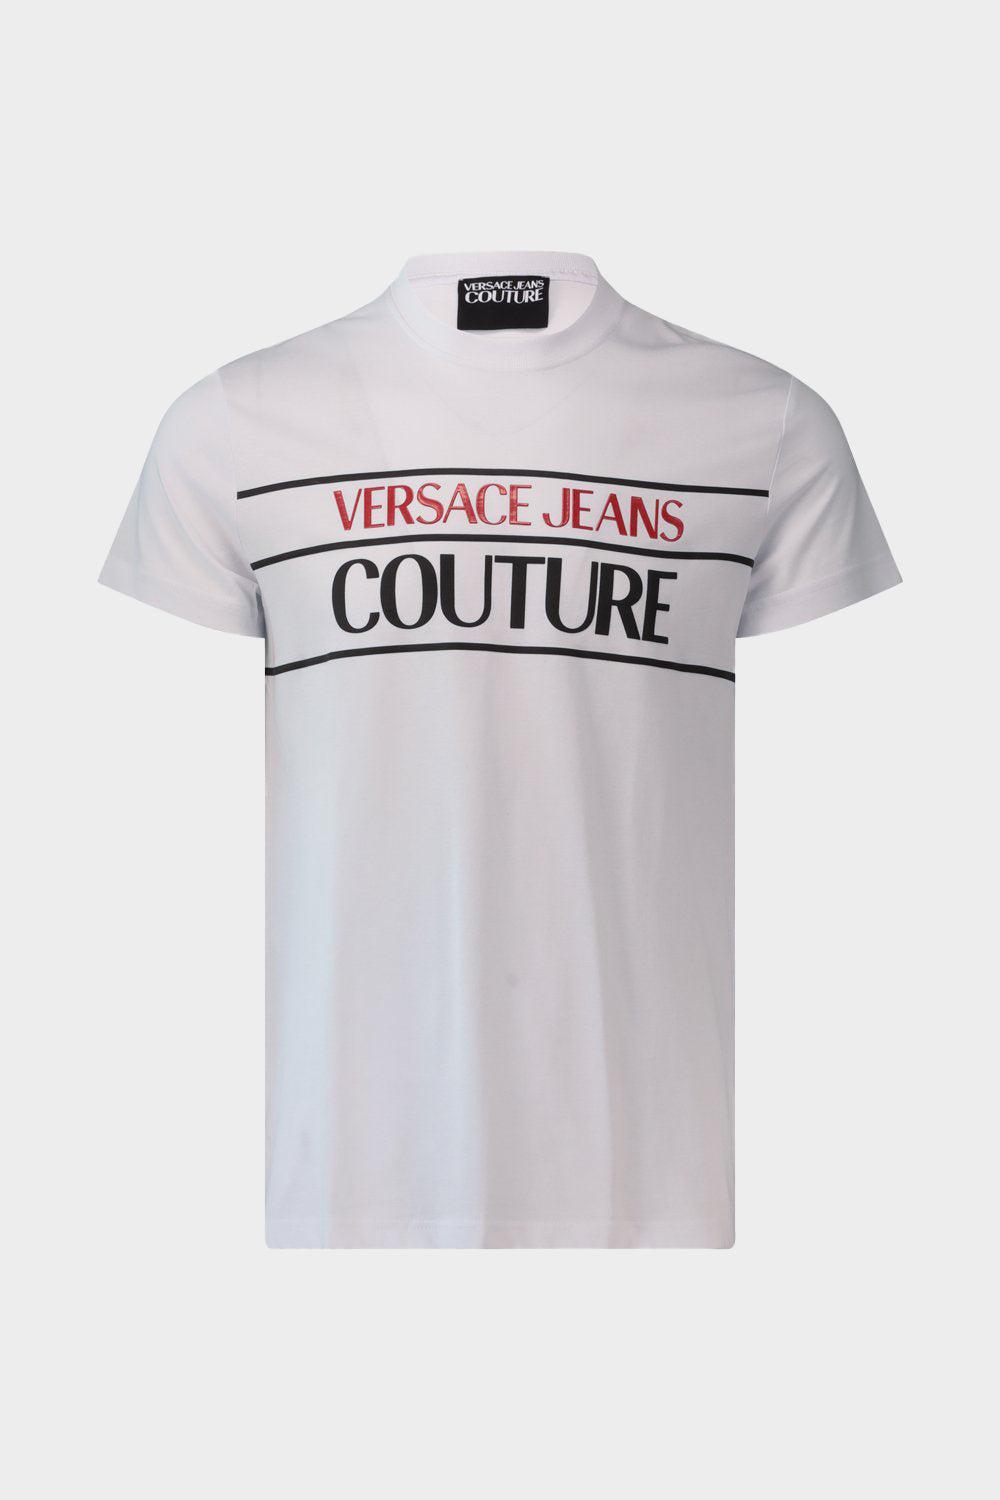 חולצת טי שירט לגברים לוגו פסים VERSACE Vendome online | ונדום .